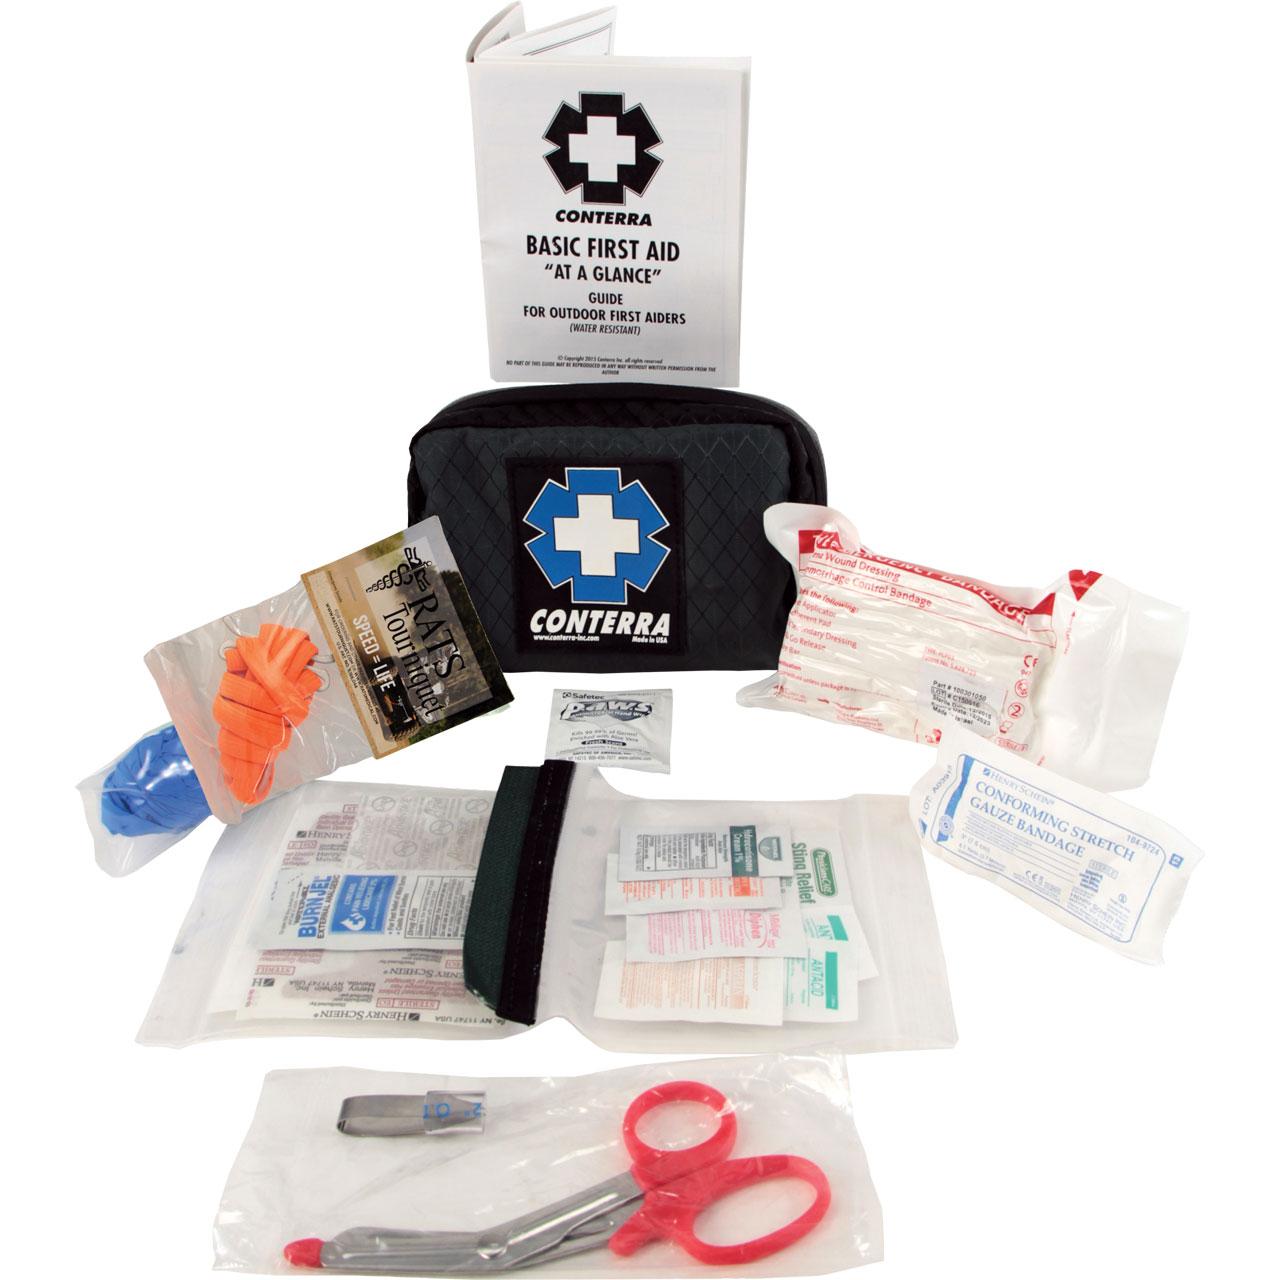 Arborist First aid kit